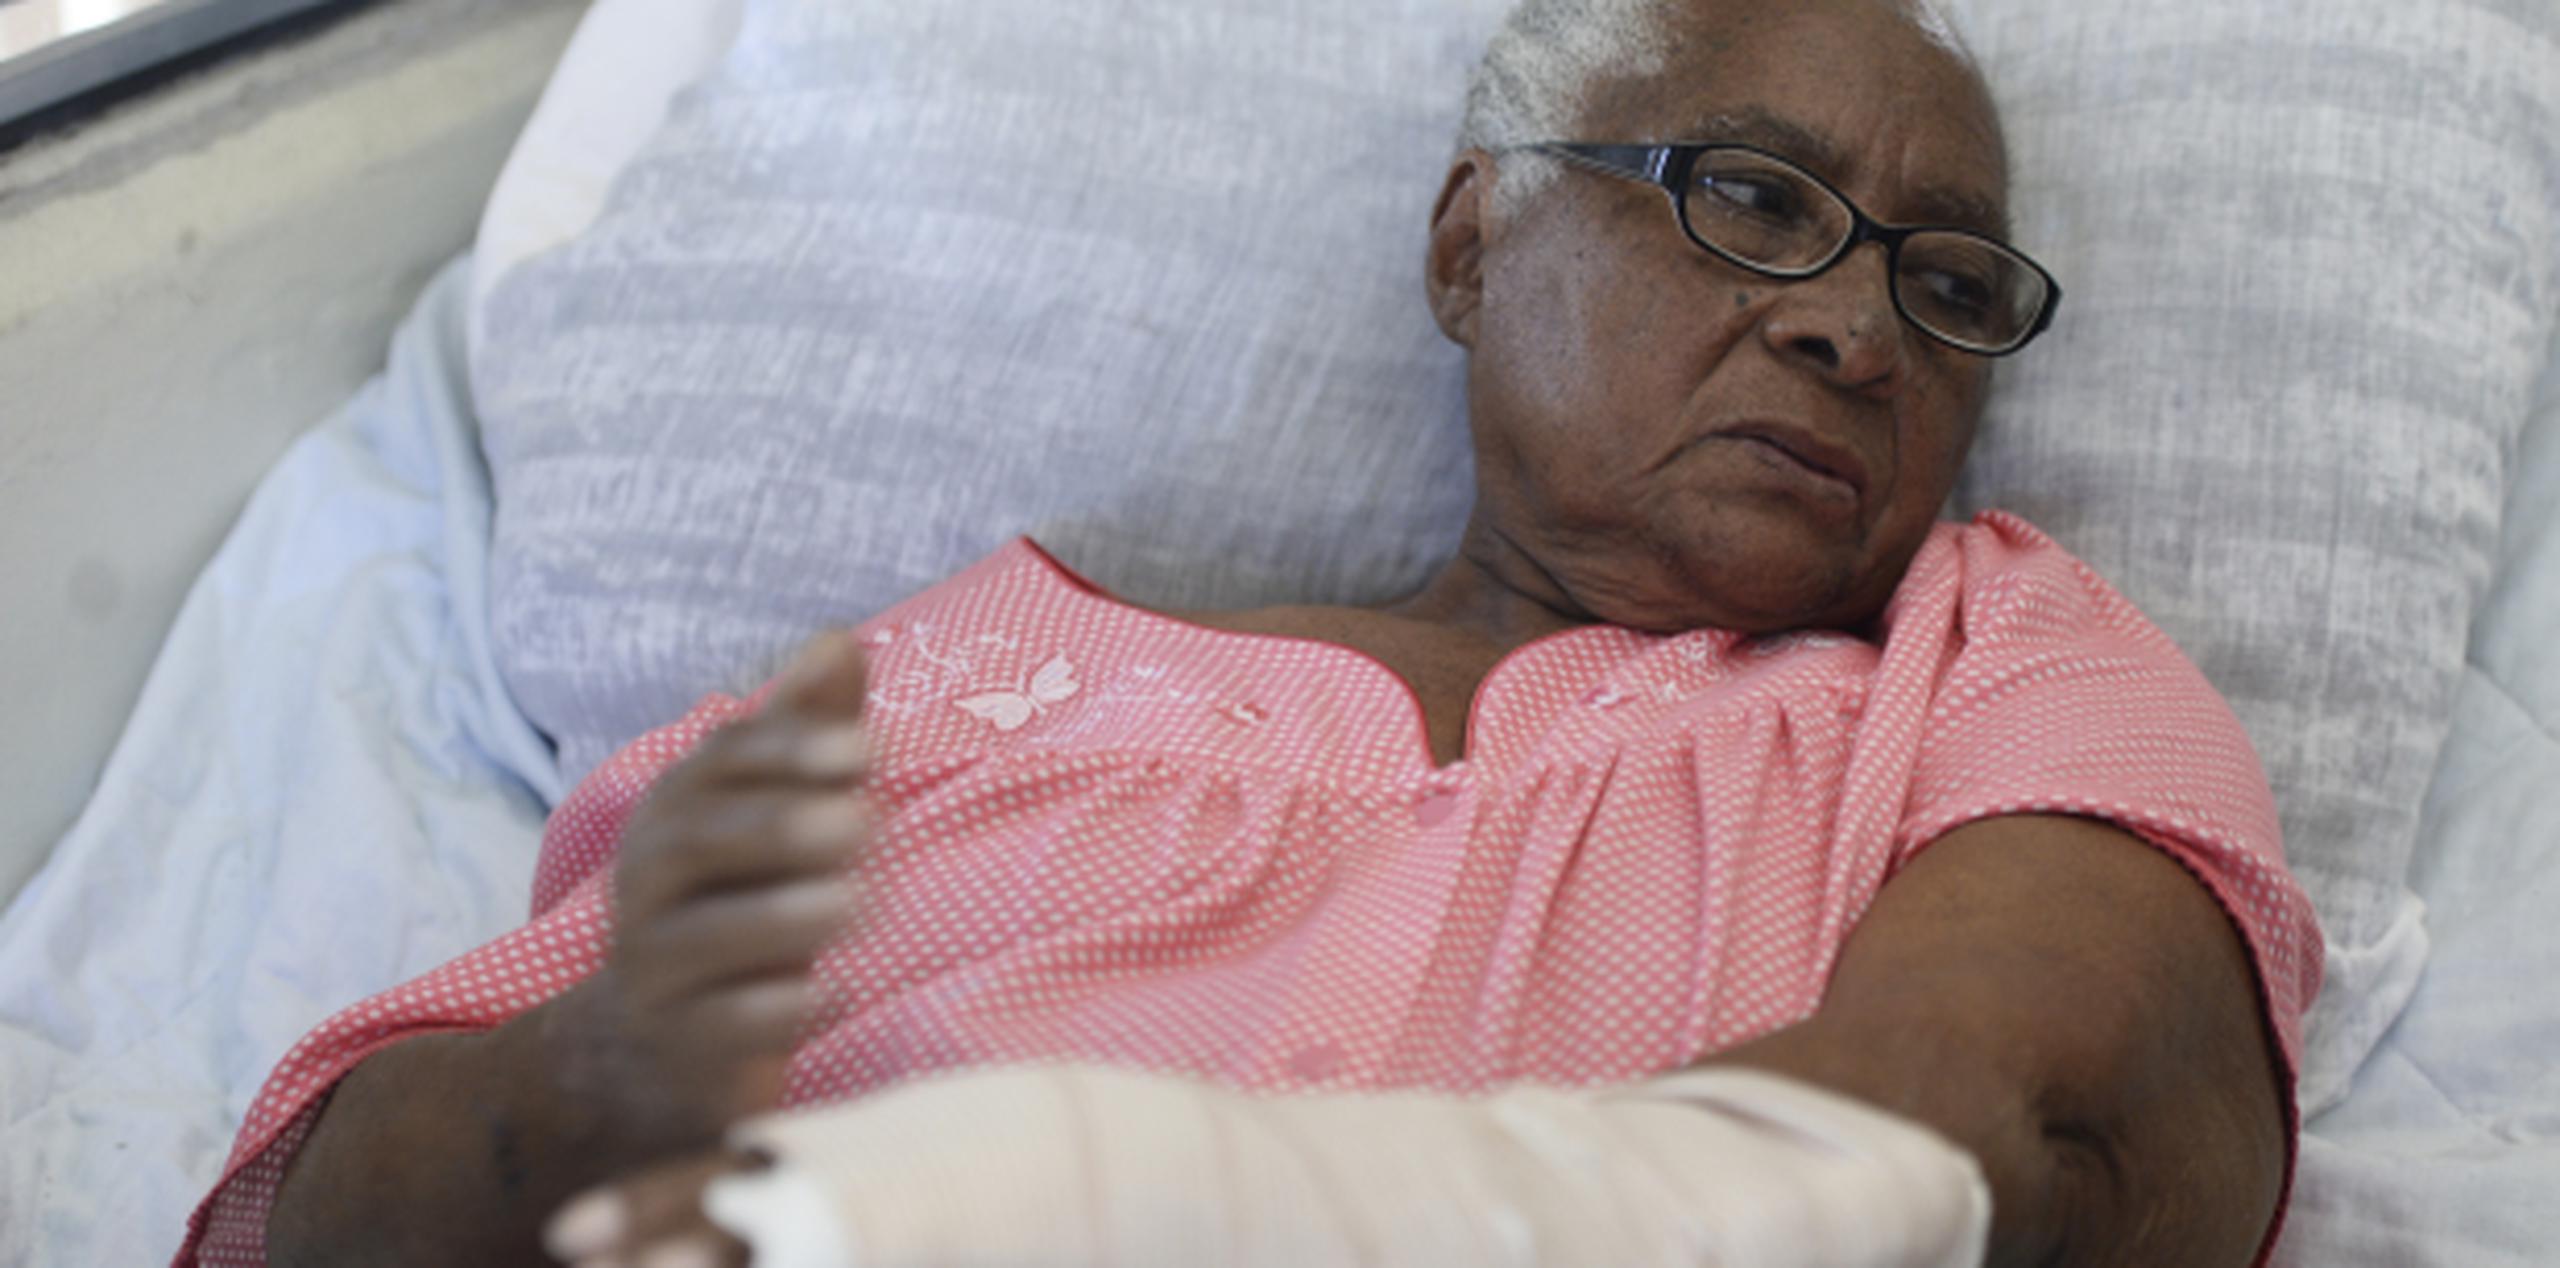 Doña Santa Andino Quiñones, de 78 años, asegura que, si pasara por otra situación así, volvería a defenderse. (gerald.lopez@gfrmedia.com)